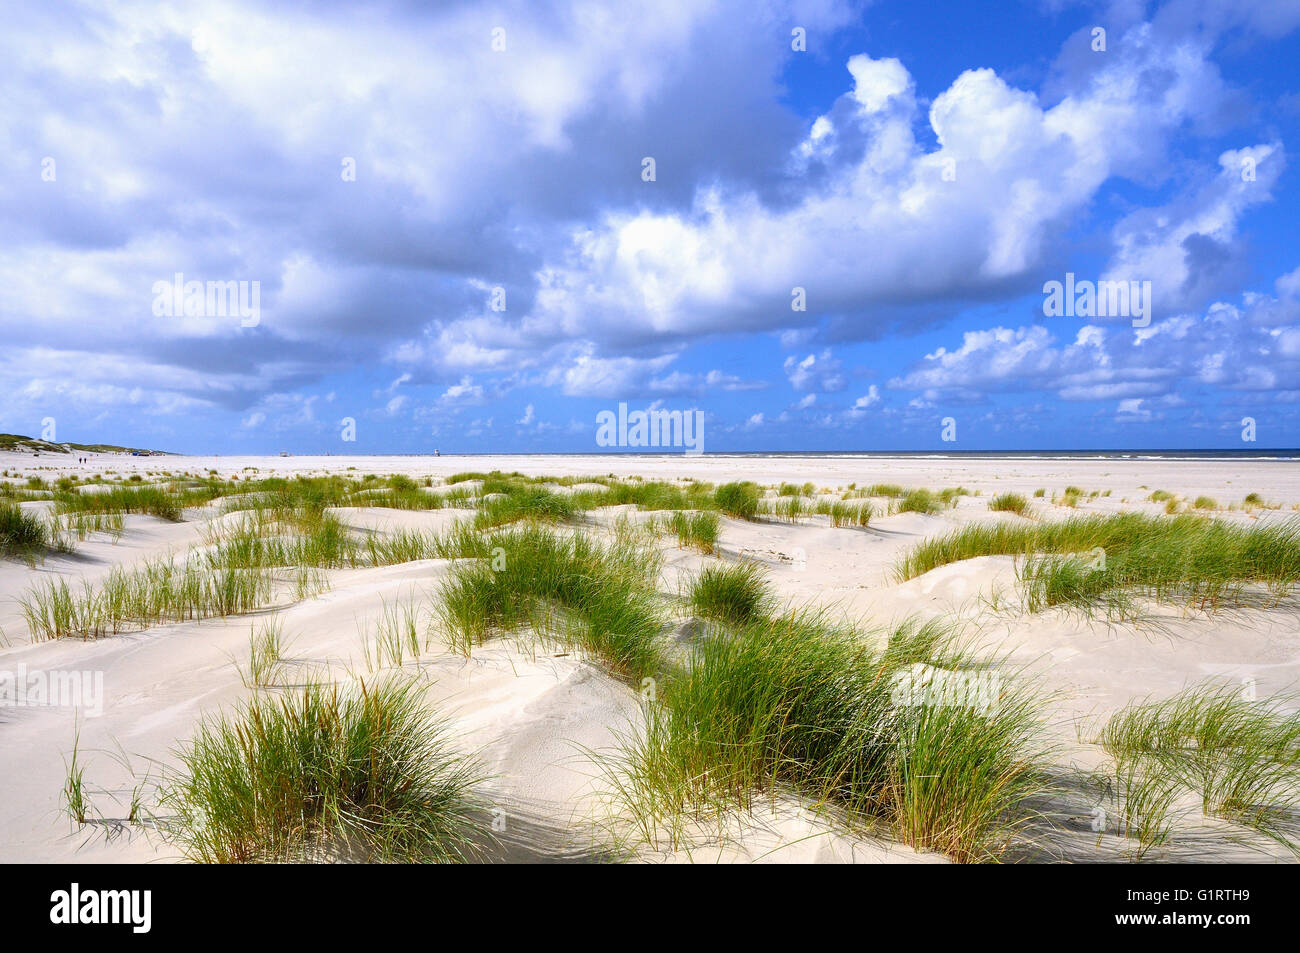 Paysage de dunes côtières de la mer du Nord de l'île de Juist, plage avec Beach grass (Ammophila arenaria), îles de la Frise Orientale Banque D'Images